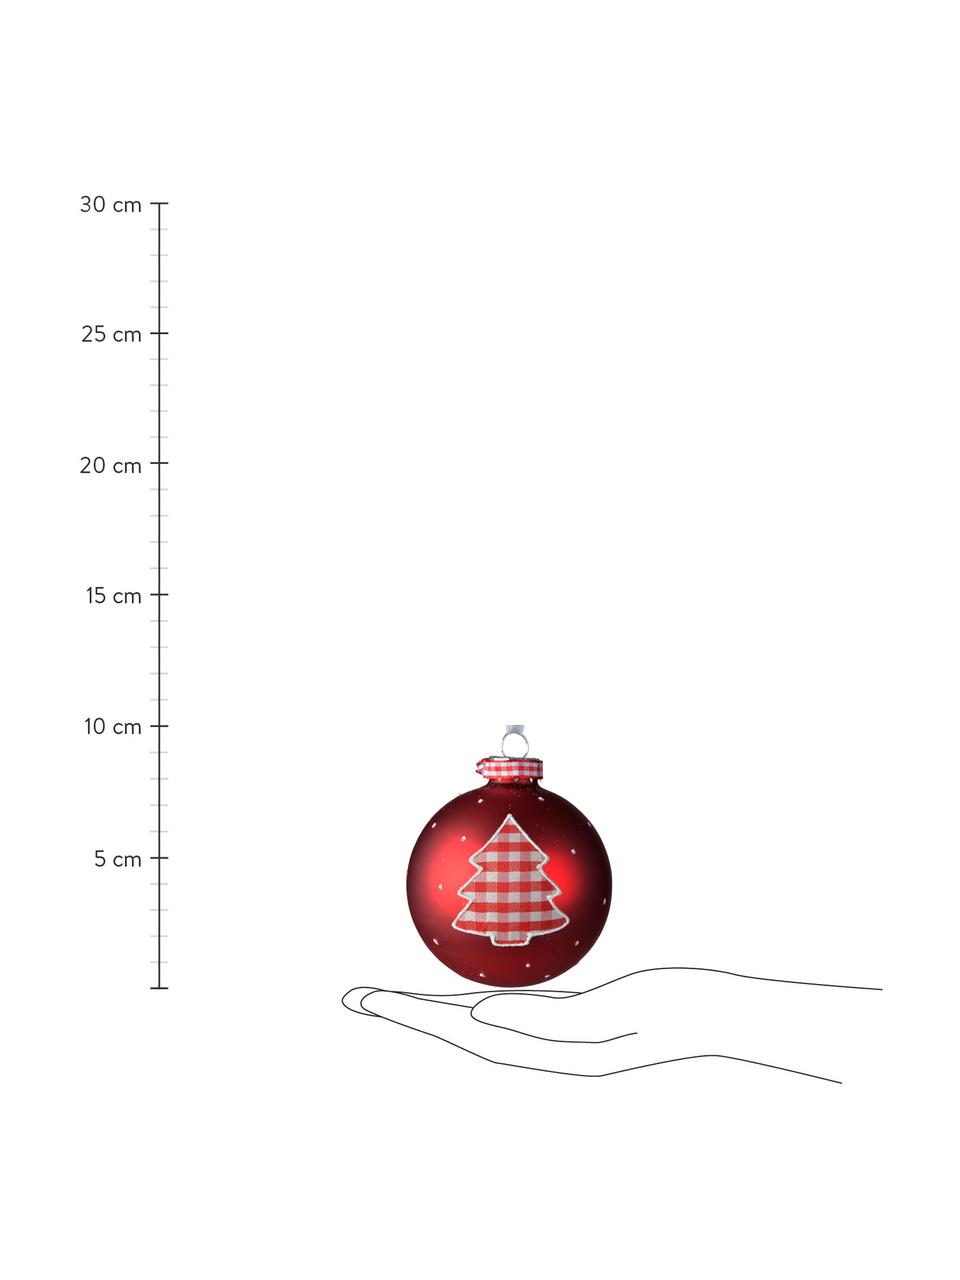 Kerstballen Vavo, 2 stuks, Wit, rood, Ø 8 cm